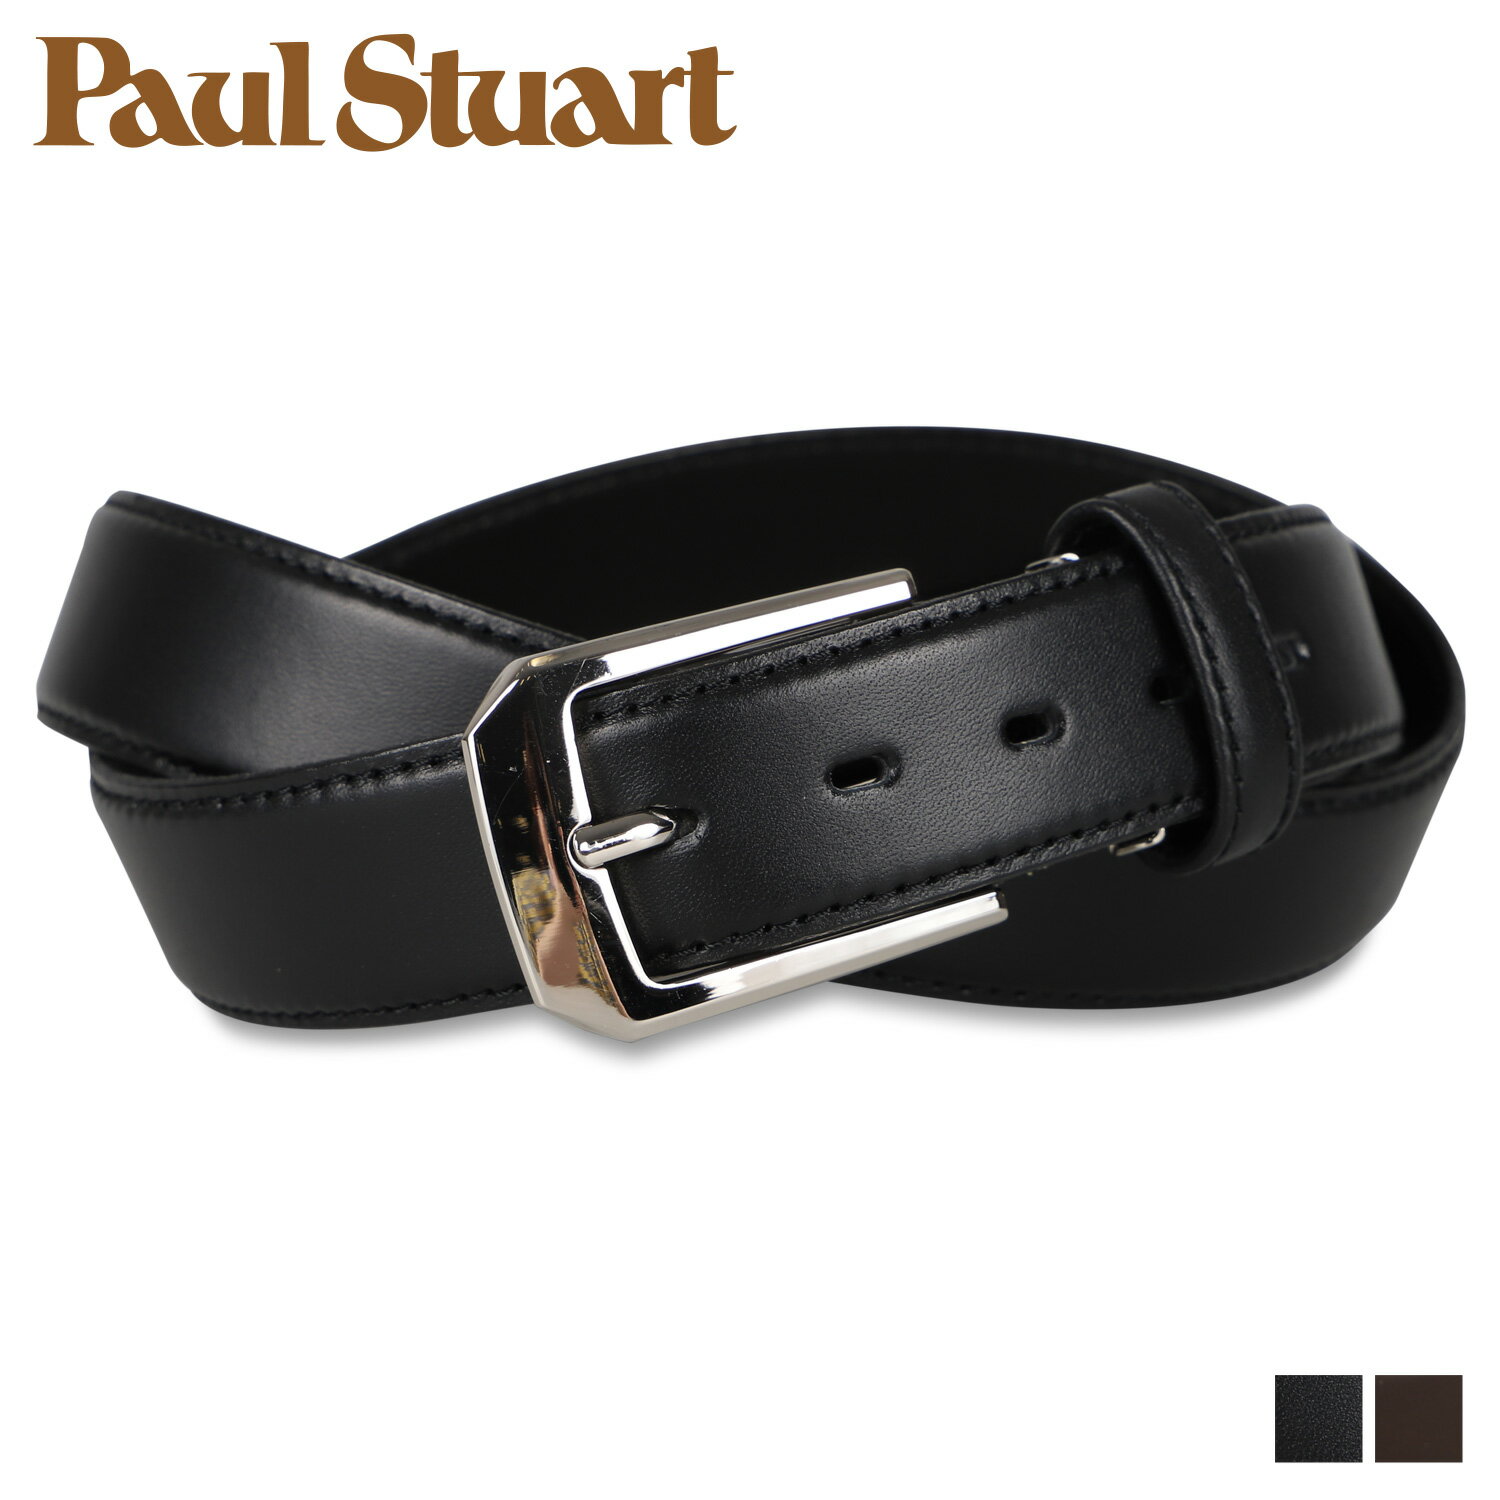 ポールスチュアート Paul Stuart ポールスチュアート ベルト メンズ 本革 BELT ブラック ダーク ブラウン 黒 SB01560